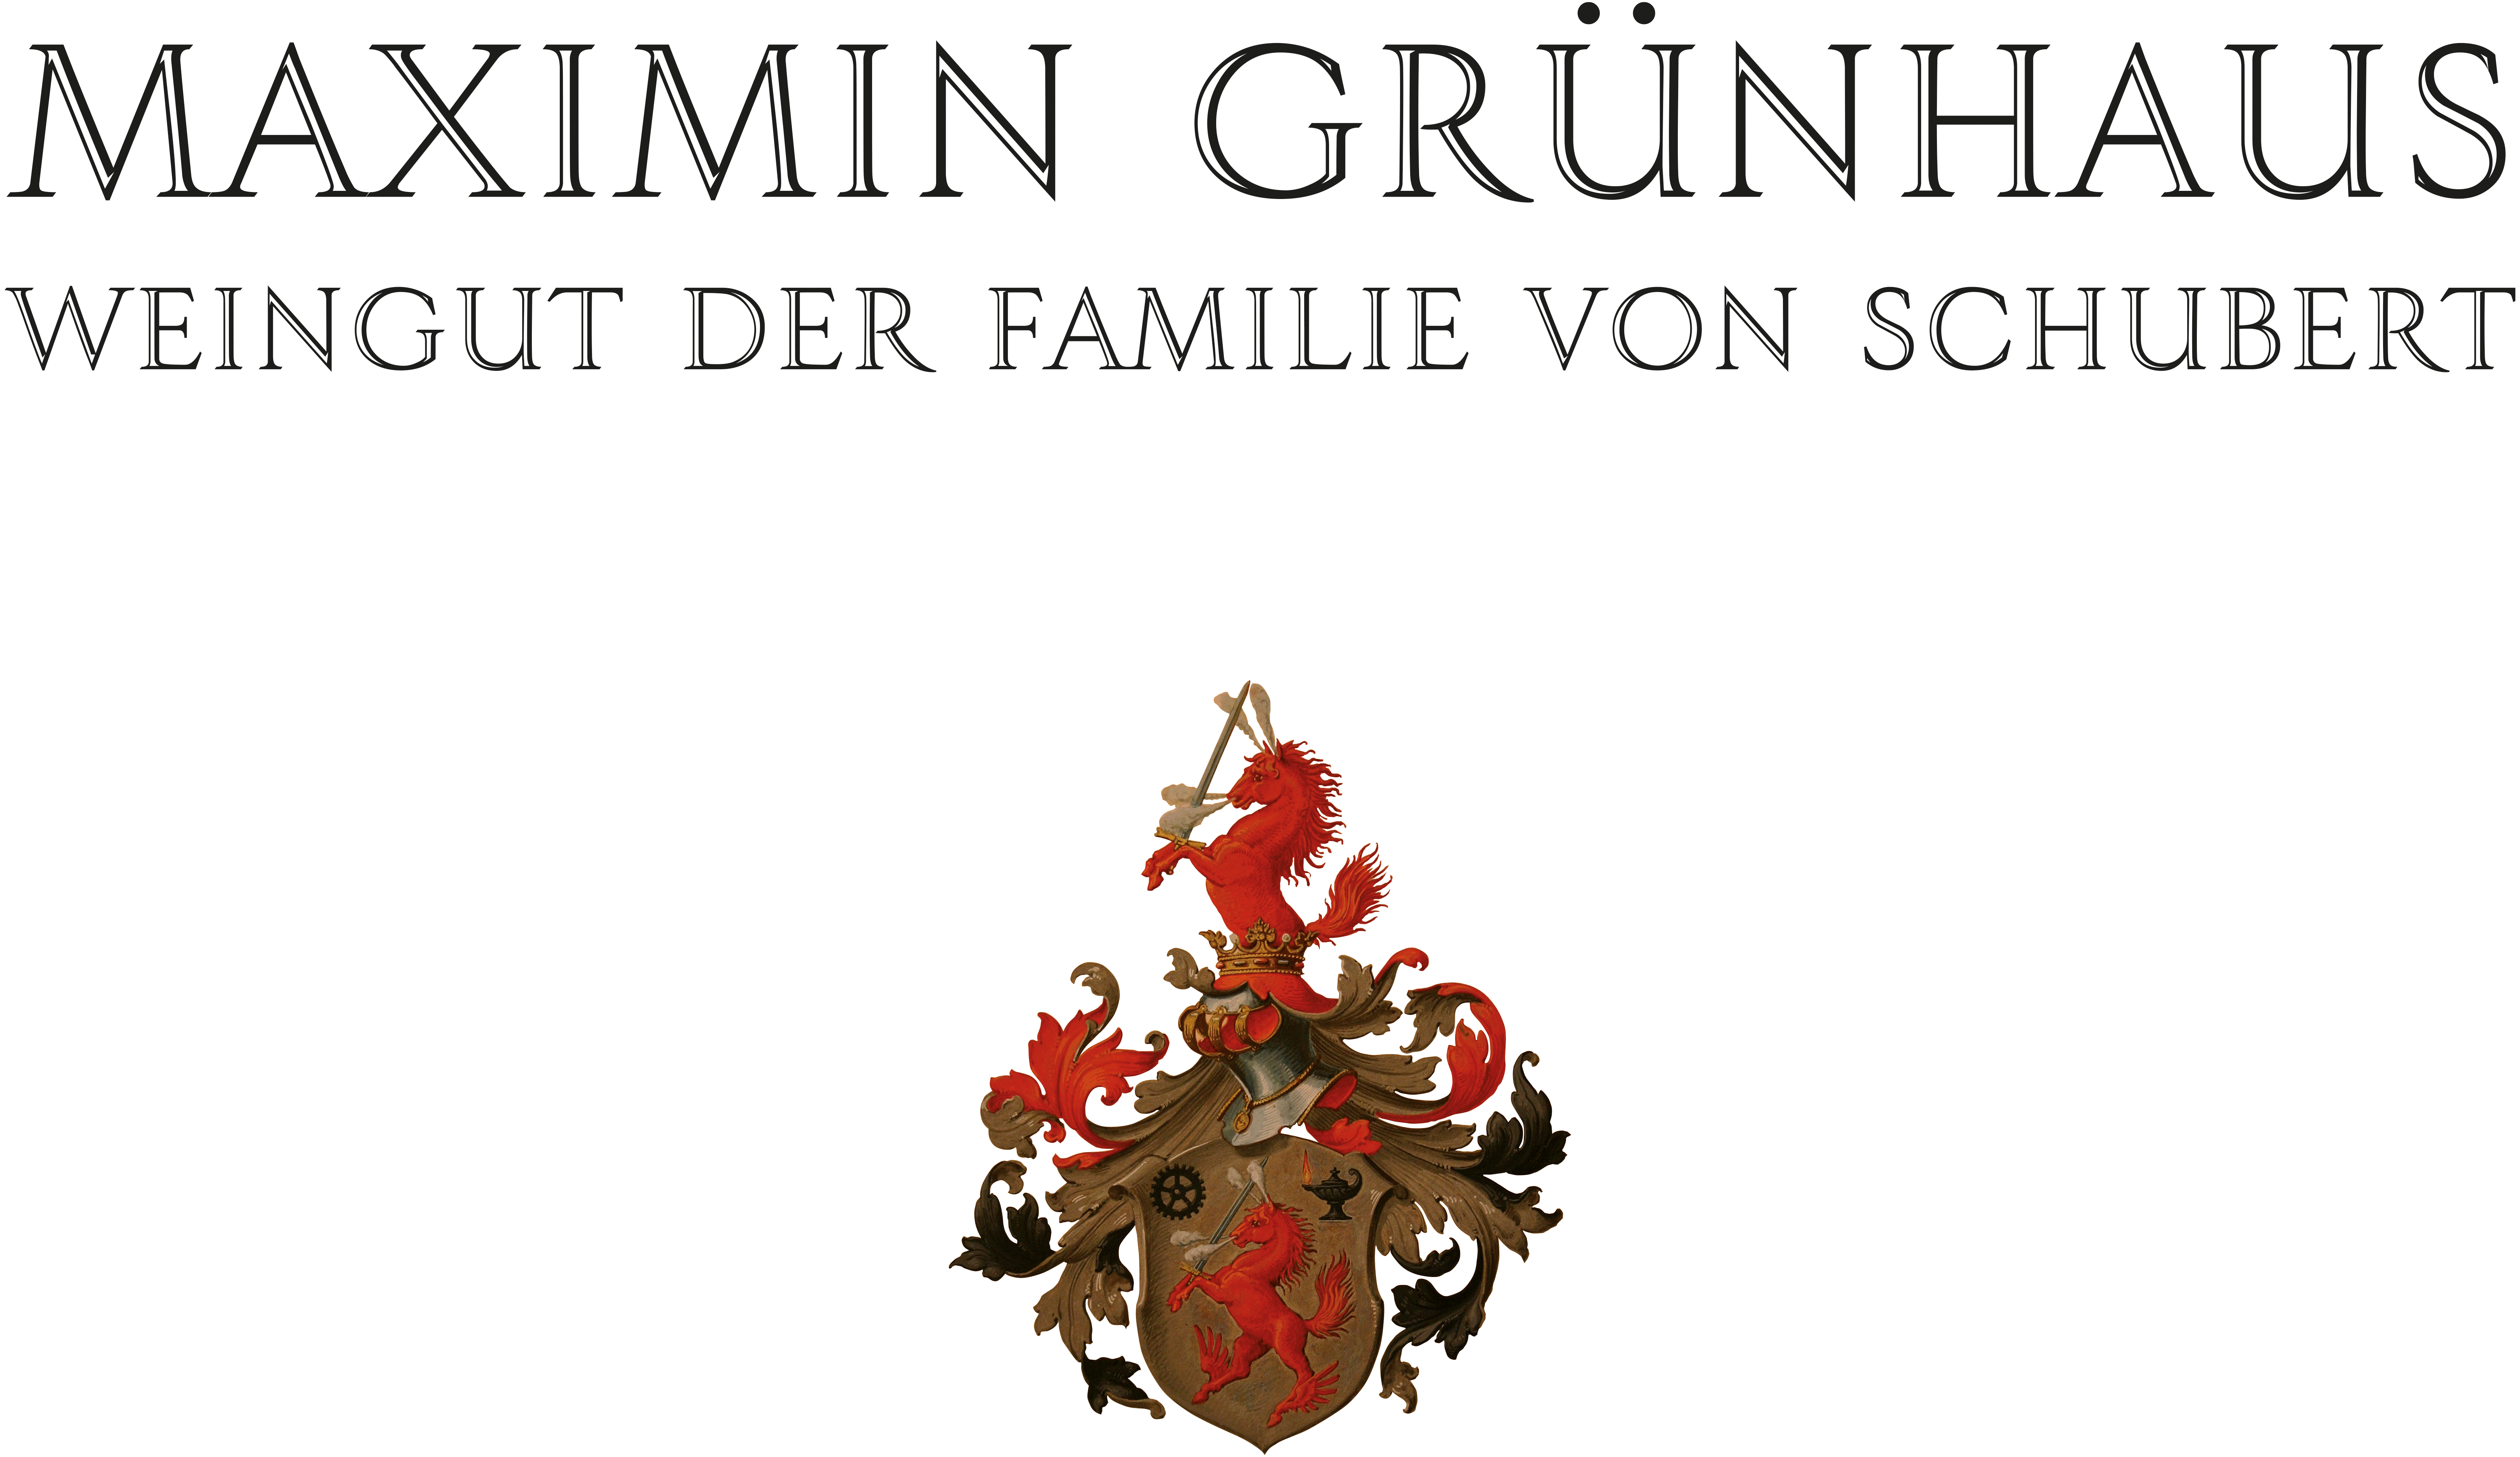 maximin gruenhaus_logo_mit wappen_weisse flaeche im hintergrund_rgb